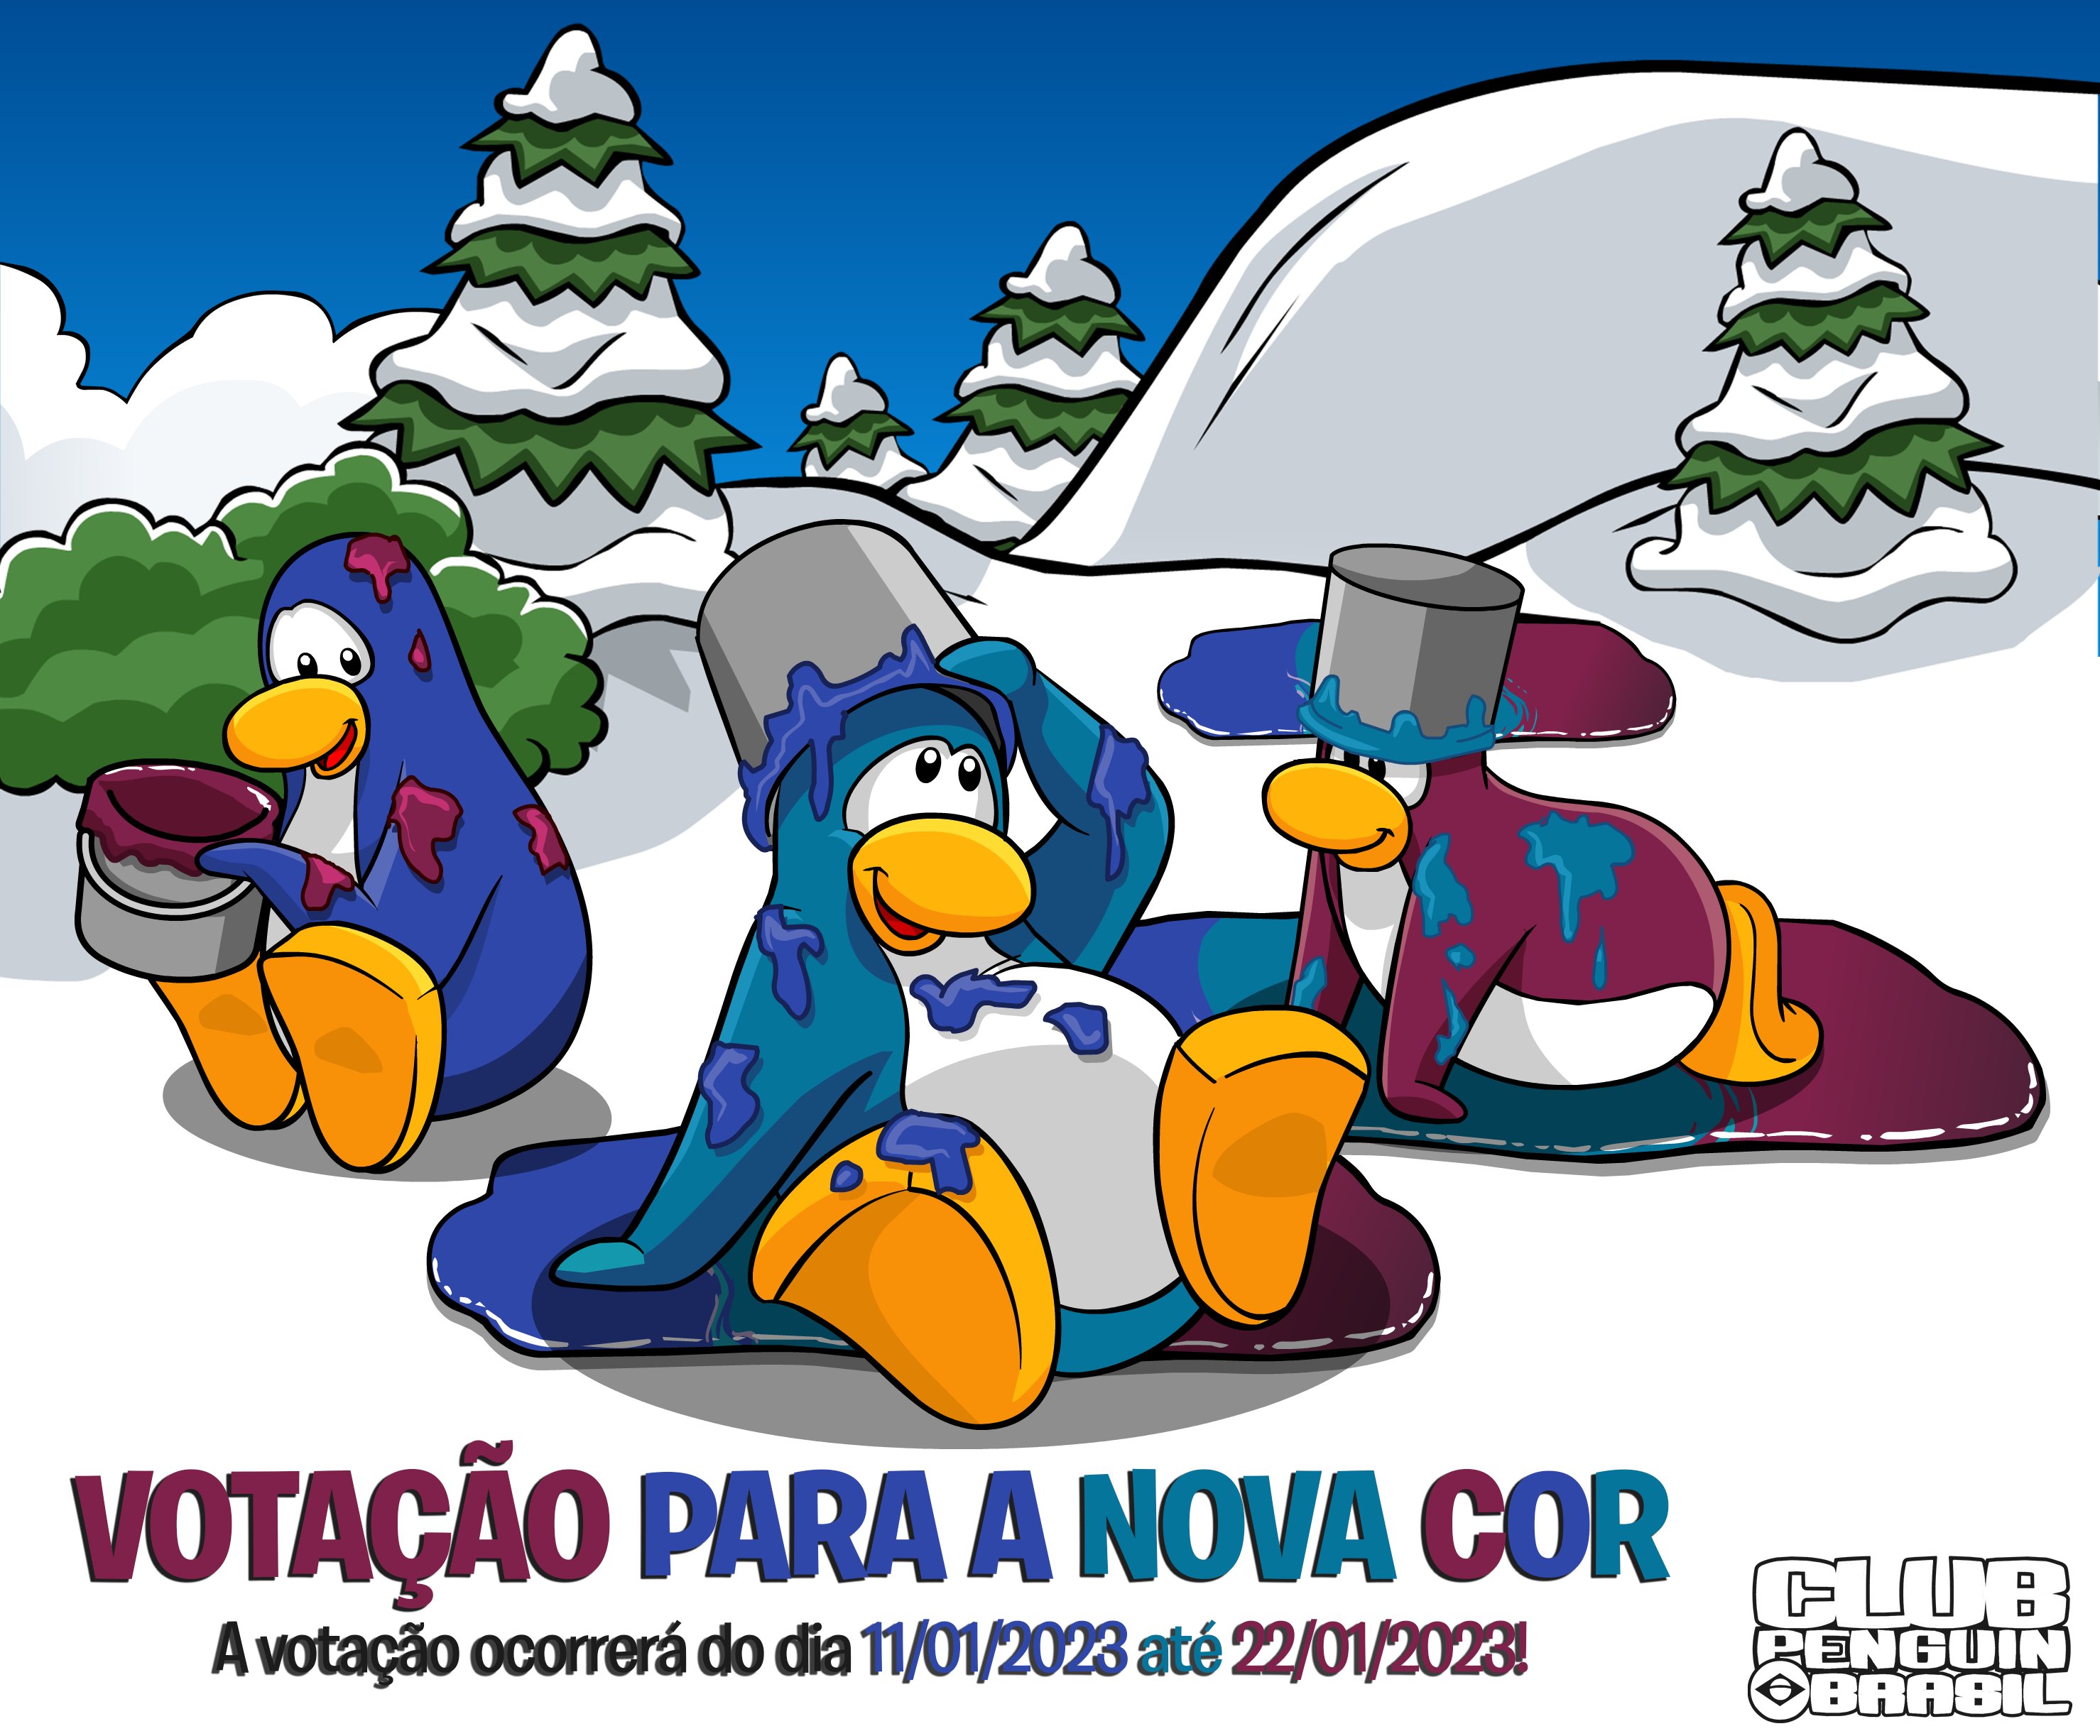 Club Penguin Brasil on X: @PinZul88 ACHO QUE ESTOU TILTADO   / X